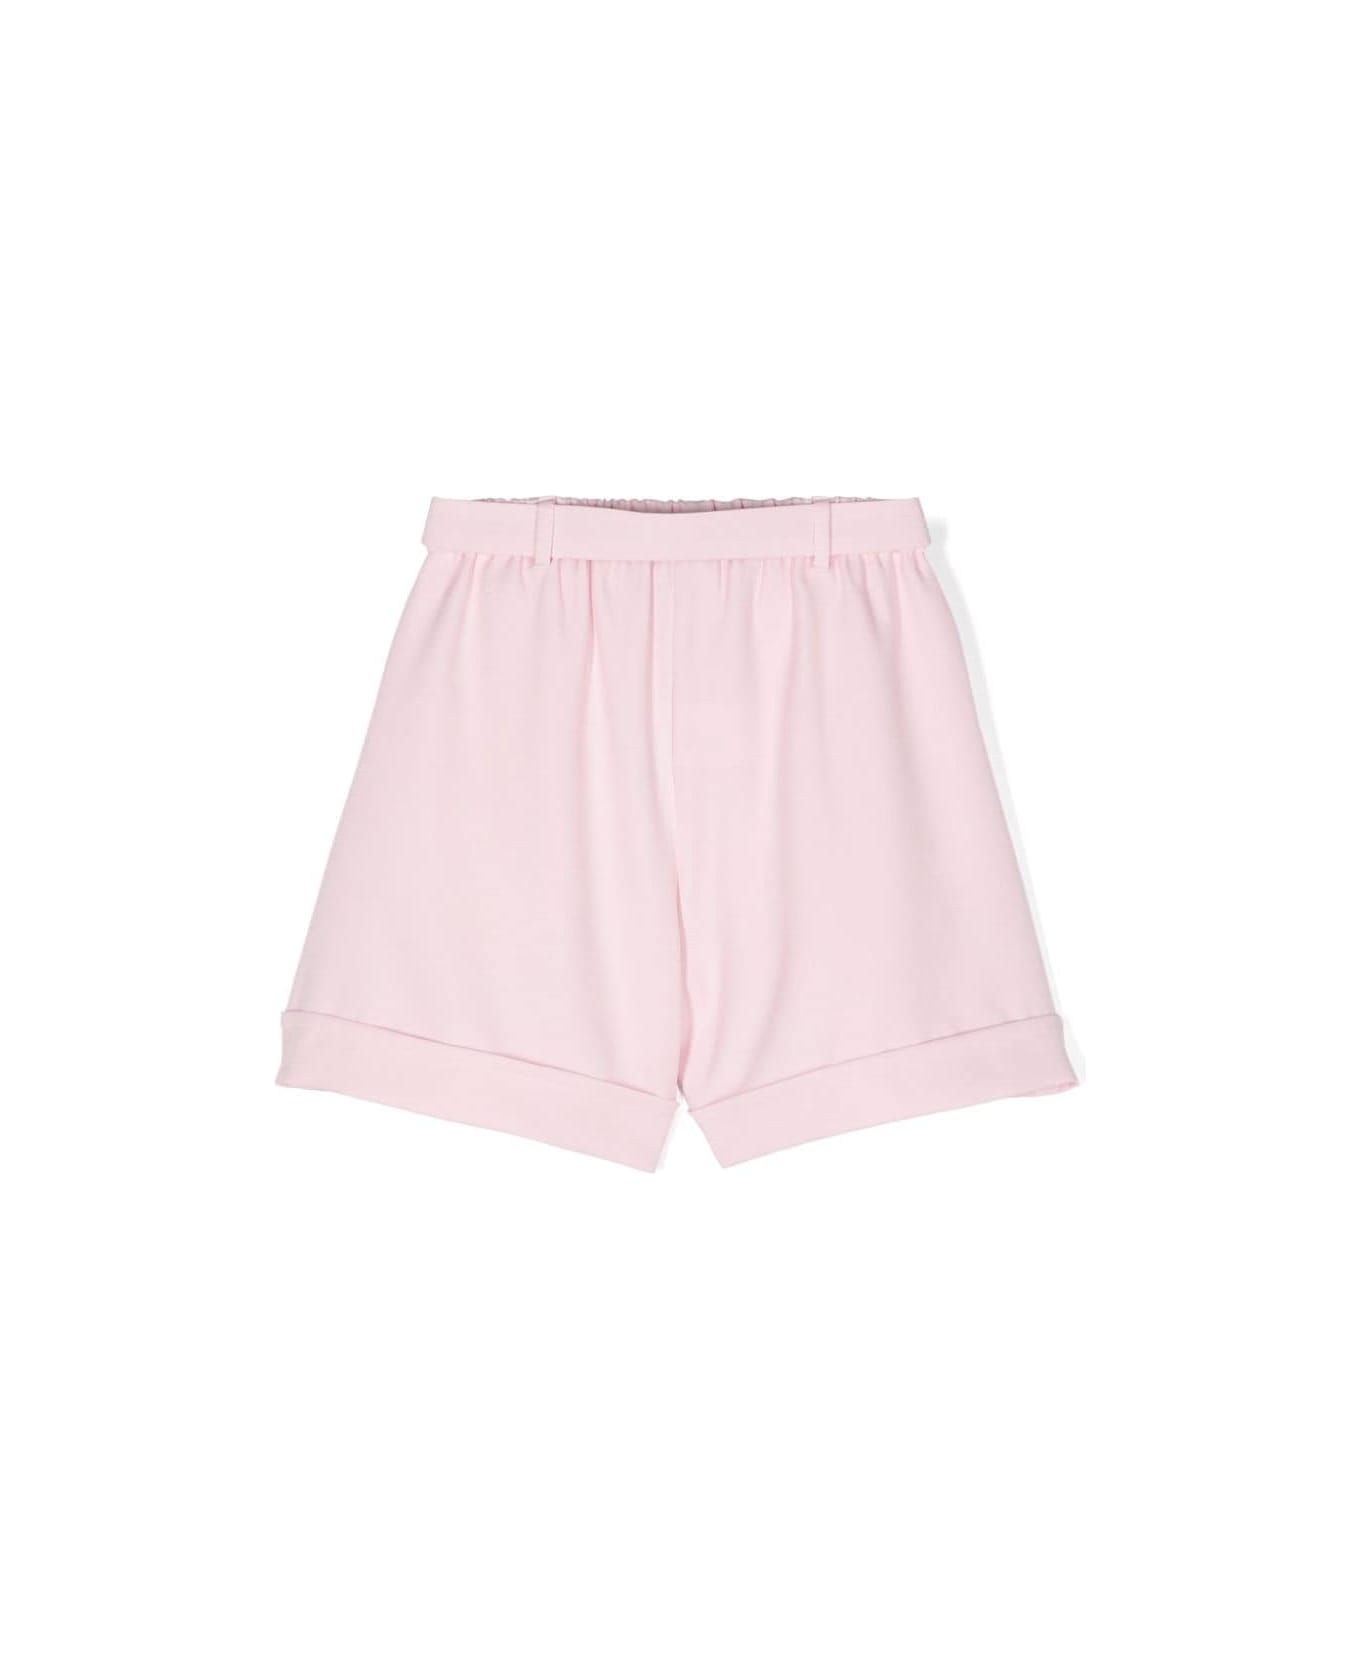 Miss Grant Shorts Rosa - Pink ボトムス